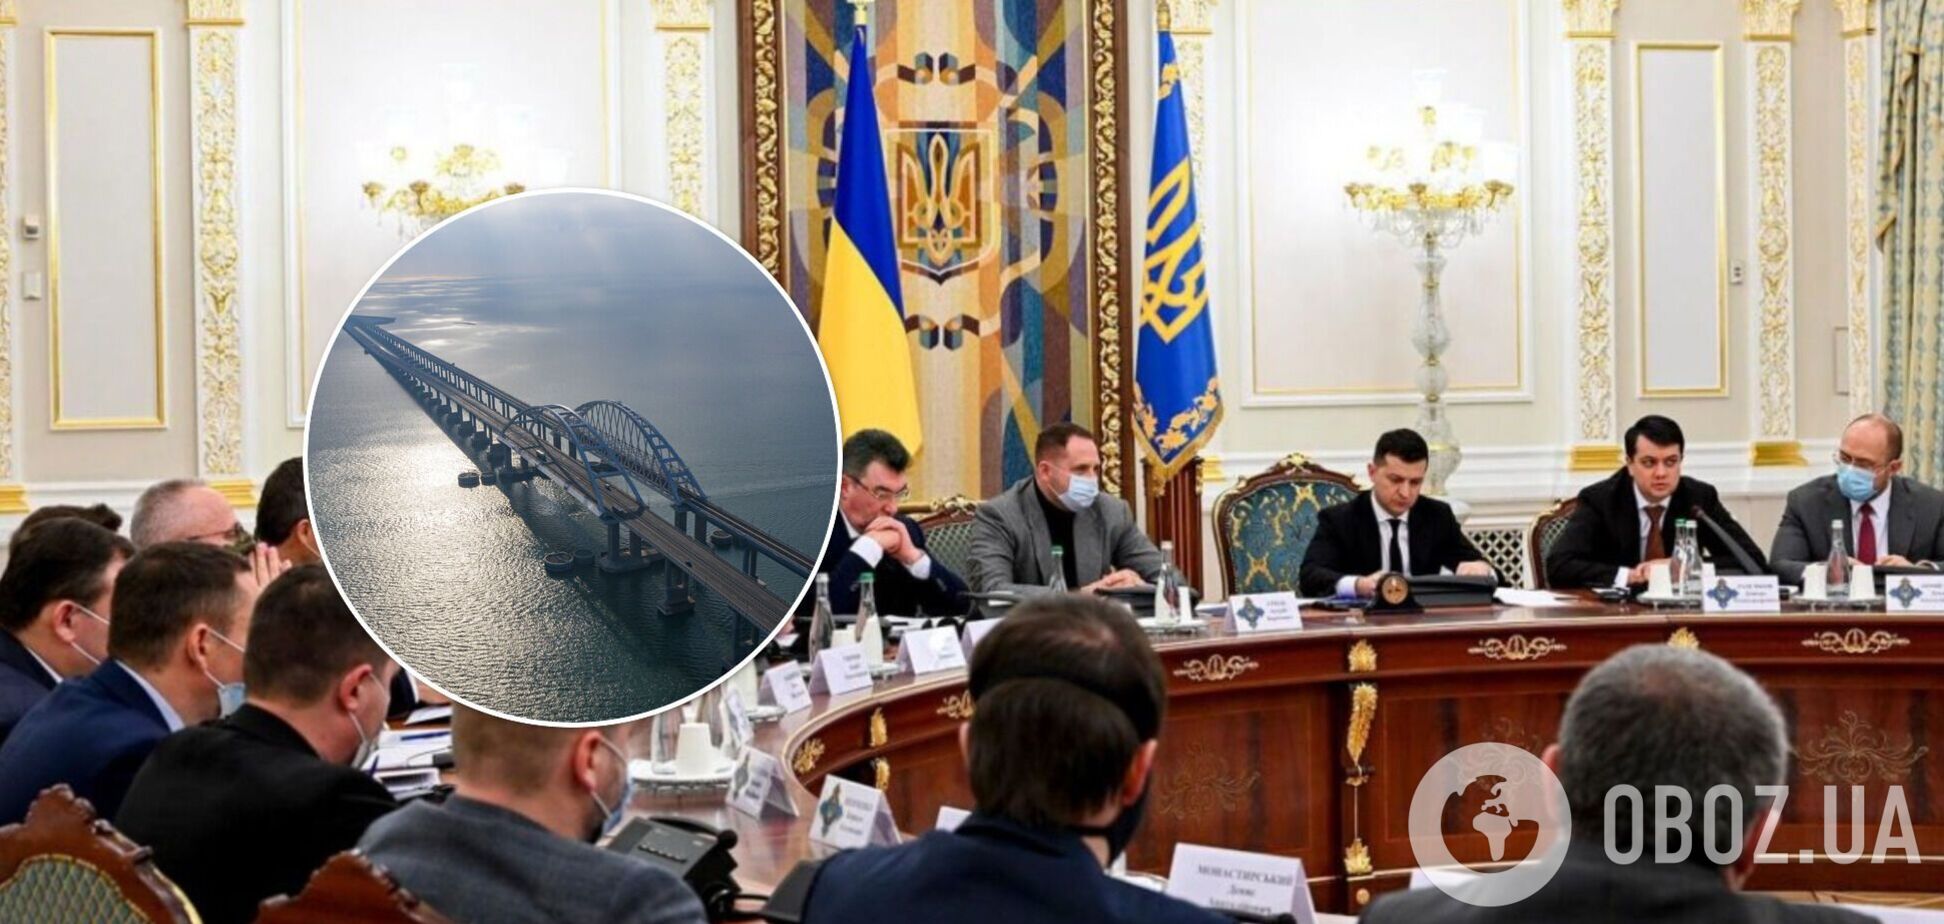 Украина готовит новые санкции против России: документ внесли на рассмотрение СНБО